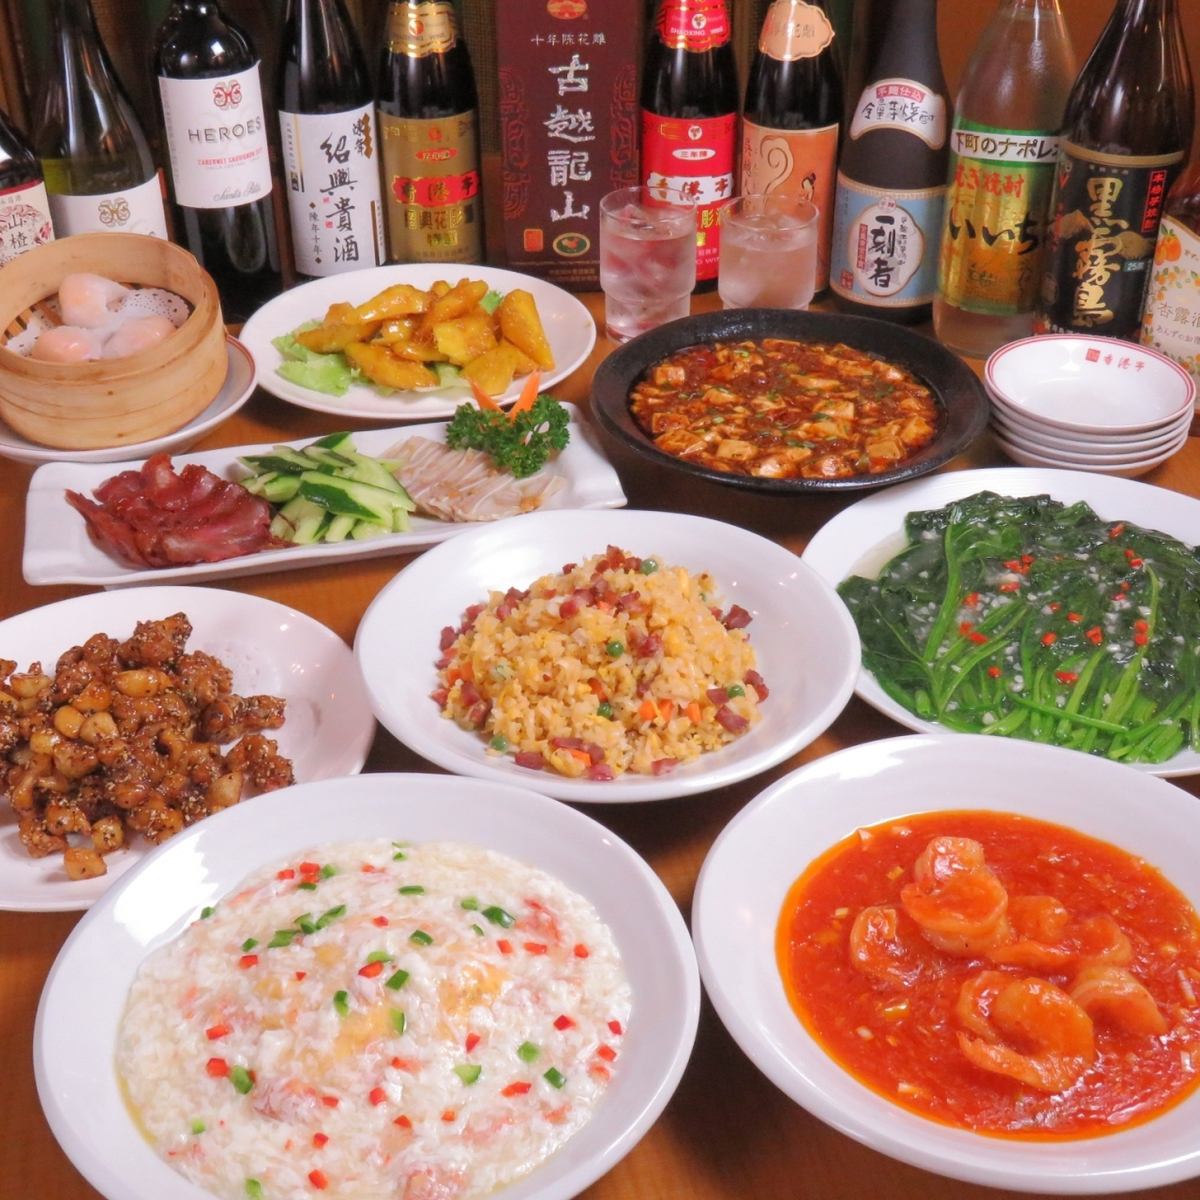 您可以以合理的價格享用餃子、麻婆豆腐、餃子等中餐。